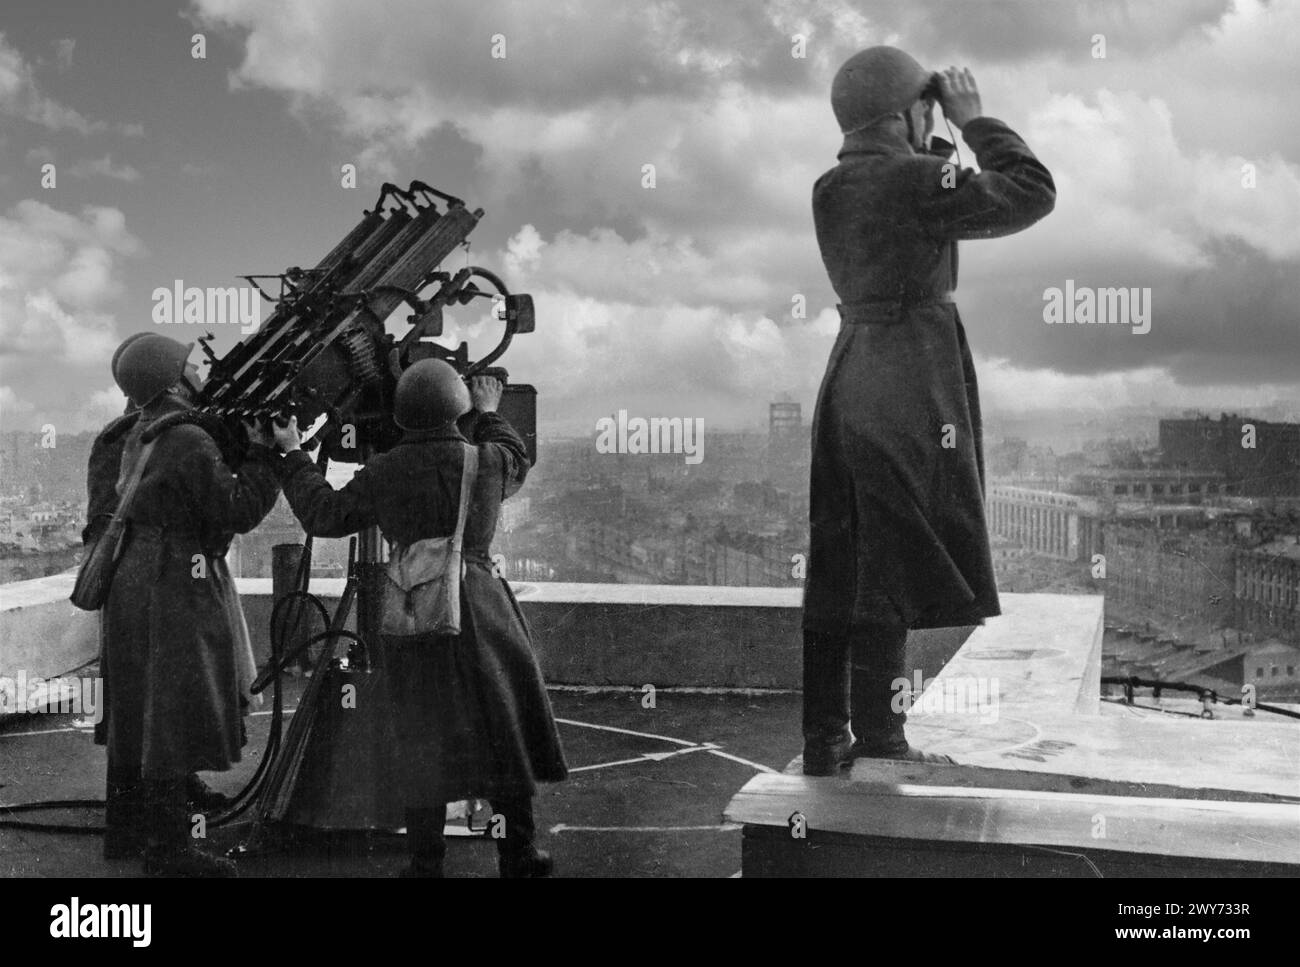 WW2 Russland 1941 Soldaten der Roten Armee scannen den Himmel nach Nazi-Deutschland-Bomberflugzeugen, während sie eine vierfache Anti-Flugzeug-M-4-Maschinengewehranlage auf dem Dach des Moskauer Hotels Moskau UdSSR Sowjetunion bemannen Stockfoto